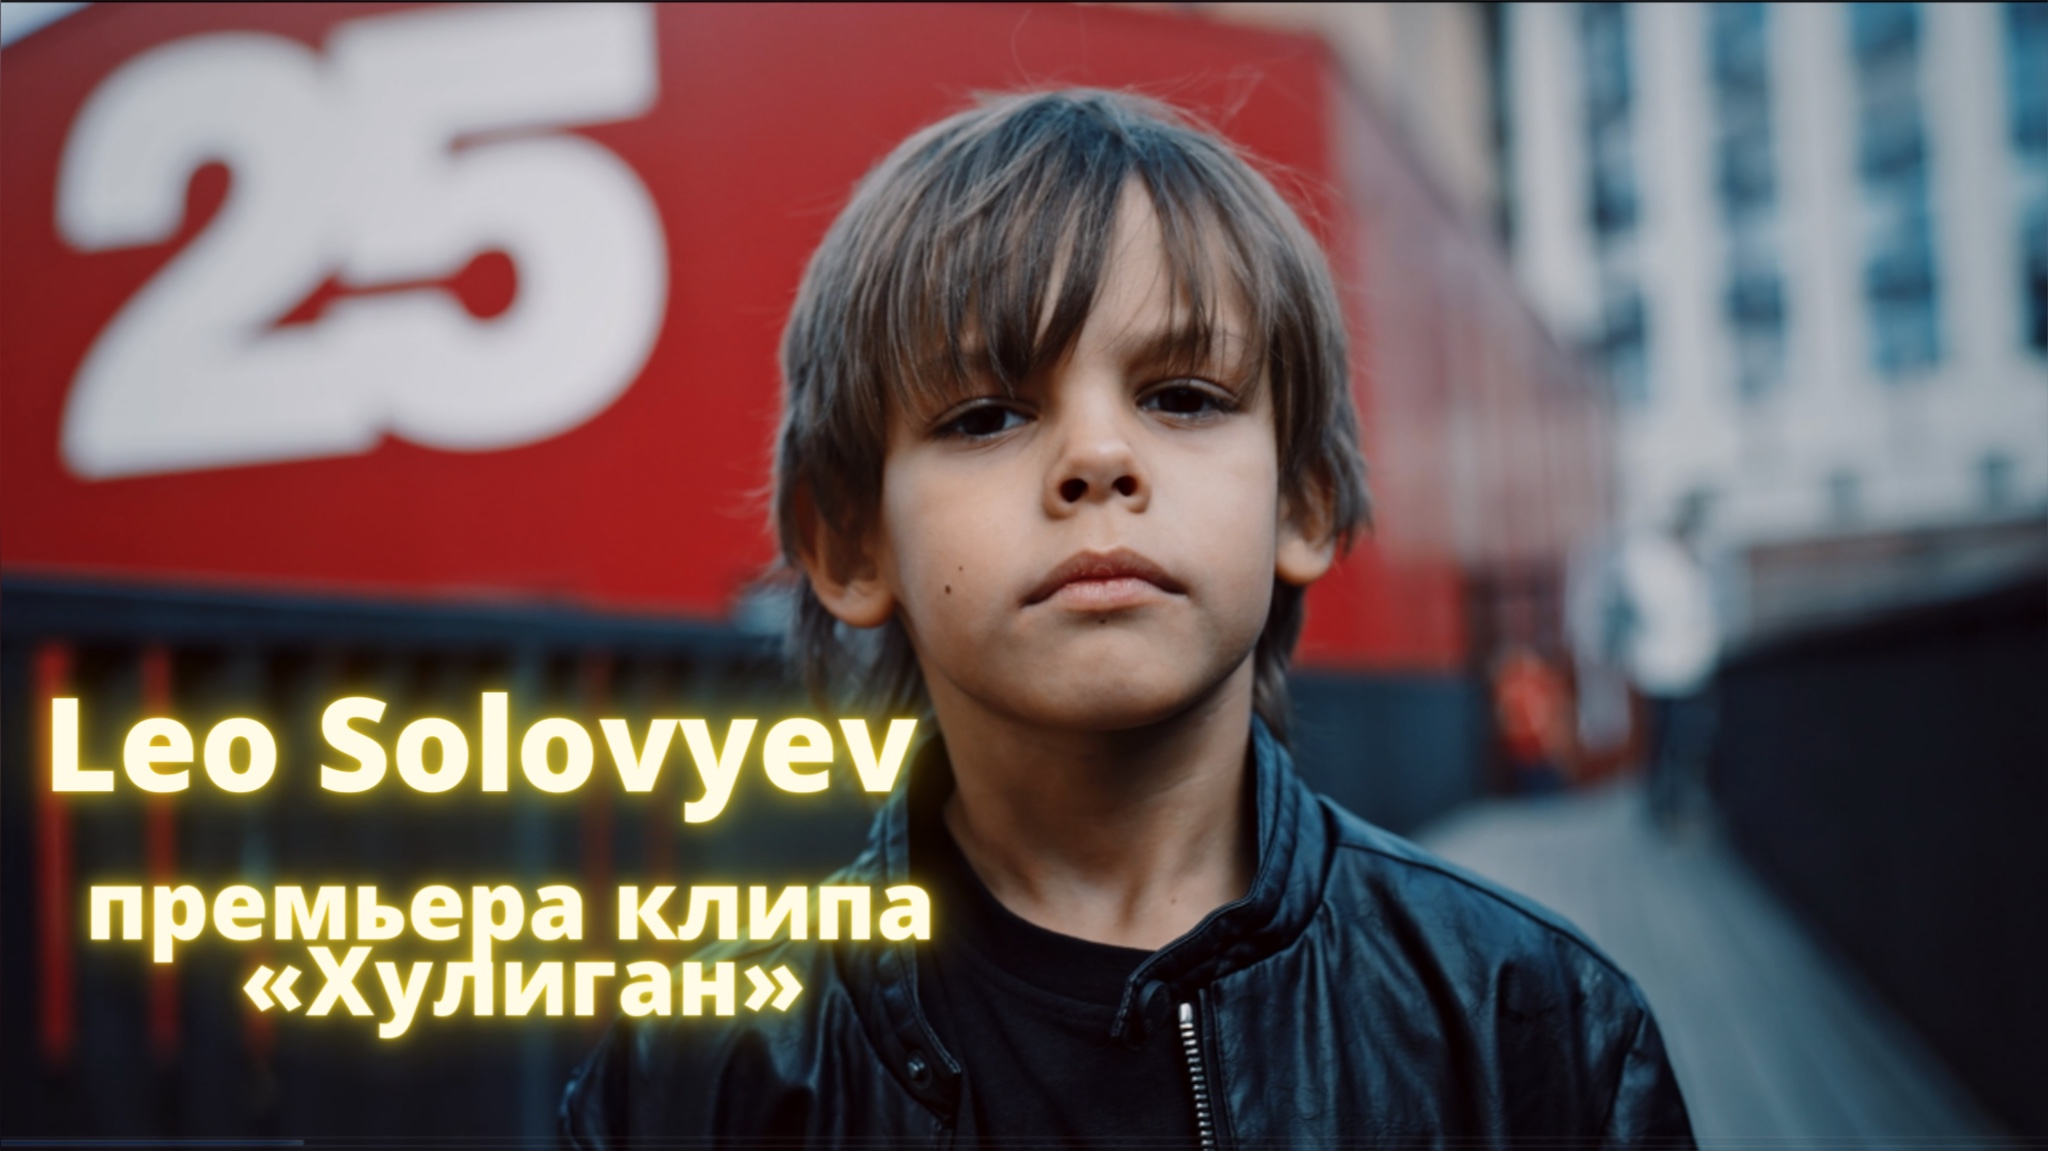 Leo solovyev хулиган. Лео певец Россия. Leo solovyev родители. Лео Соловьев песня хулиган.